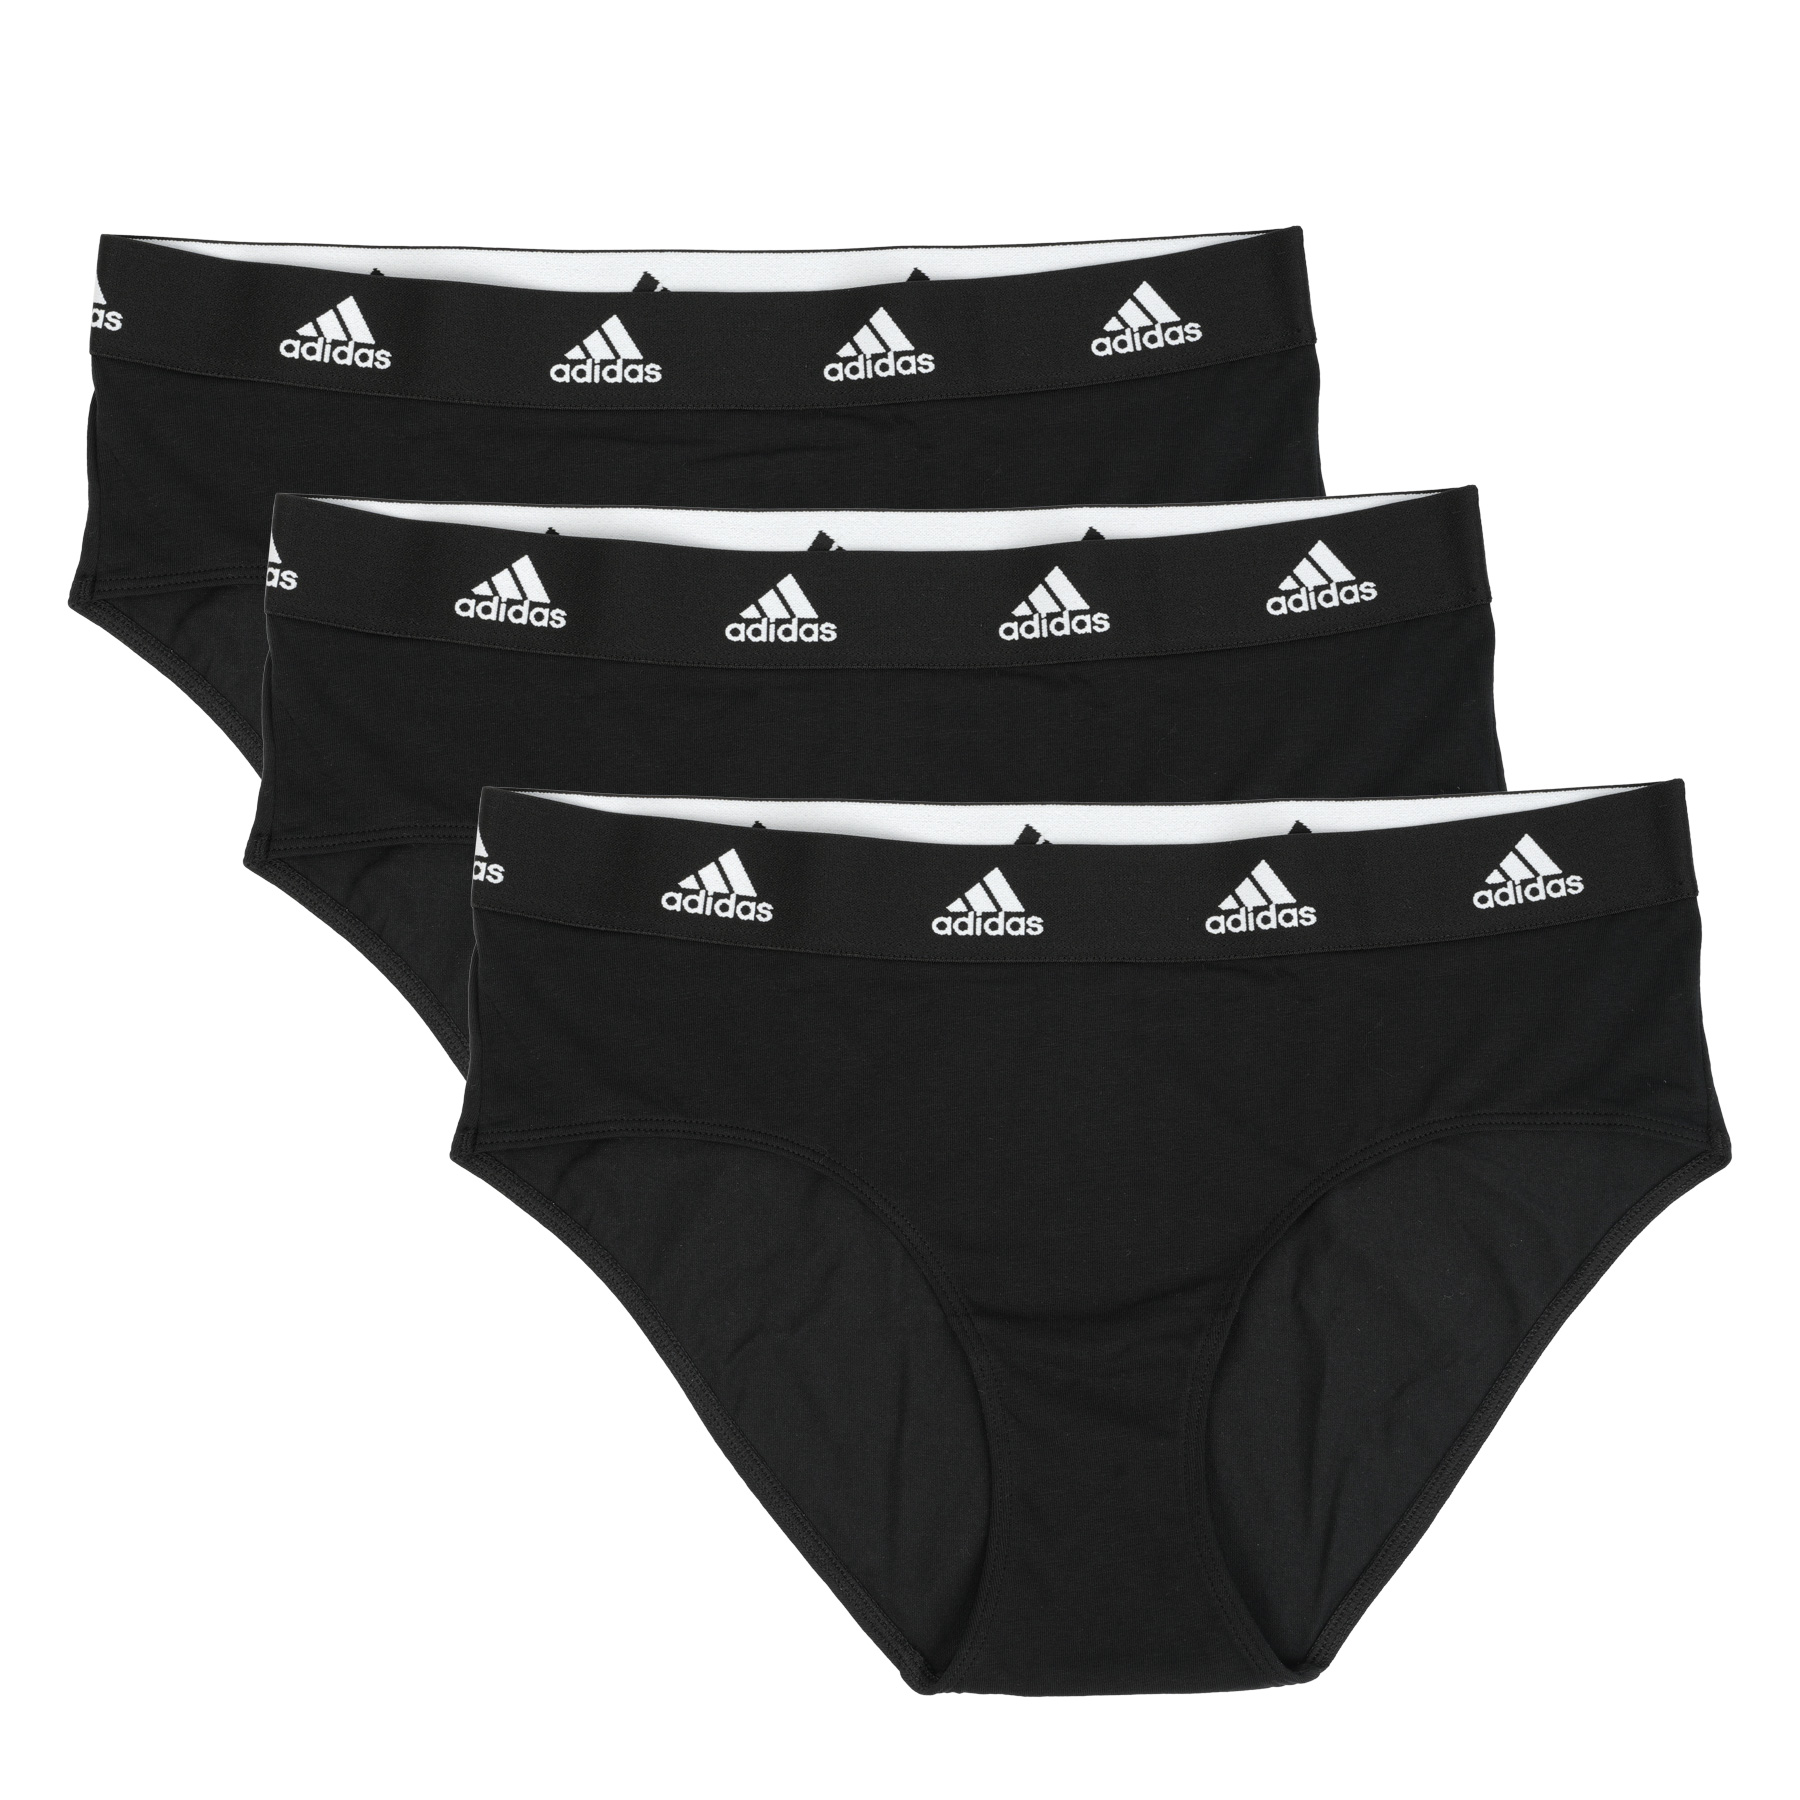 Produktbild von adidas Sports Underwear Hipster Unterhose Damen - 3 Pack - 000-schwarz